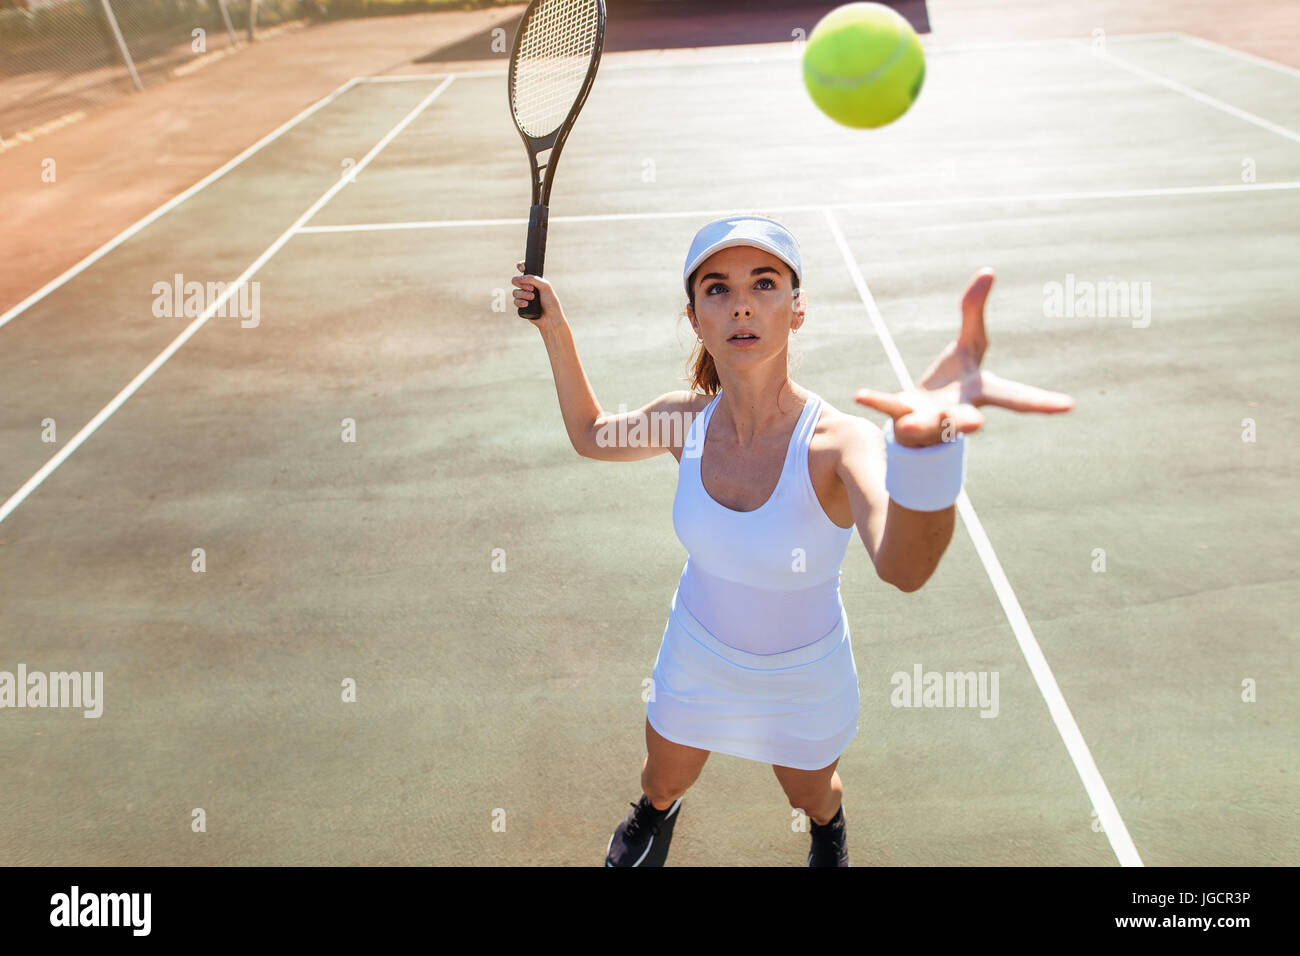 Belle jeune femme tennis player desservant la balle. Jeune femme dans les vêtements de sport le tennis match en cour. Banque D'Images